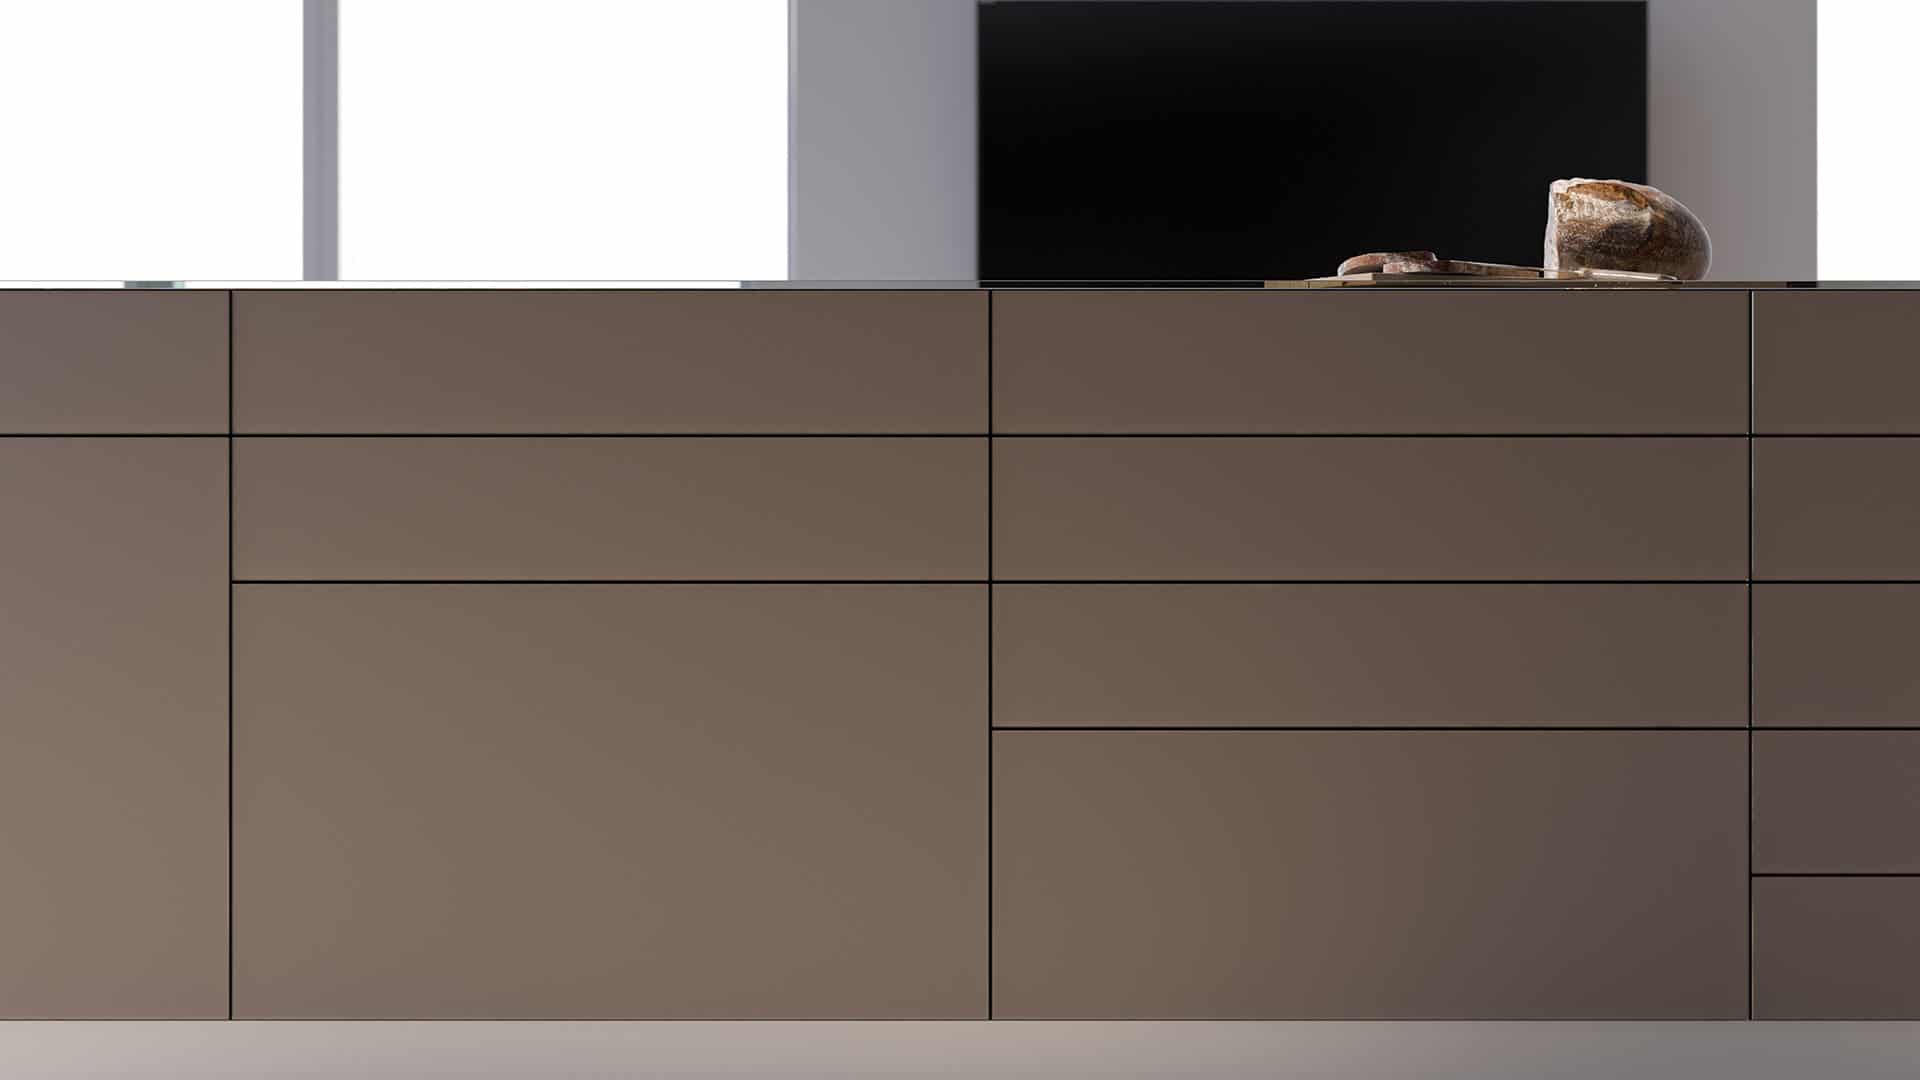 Mueble de diseño para la cocina en color marrón con un pan sobre el a modo de decoración